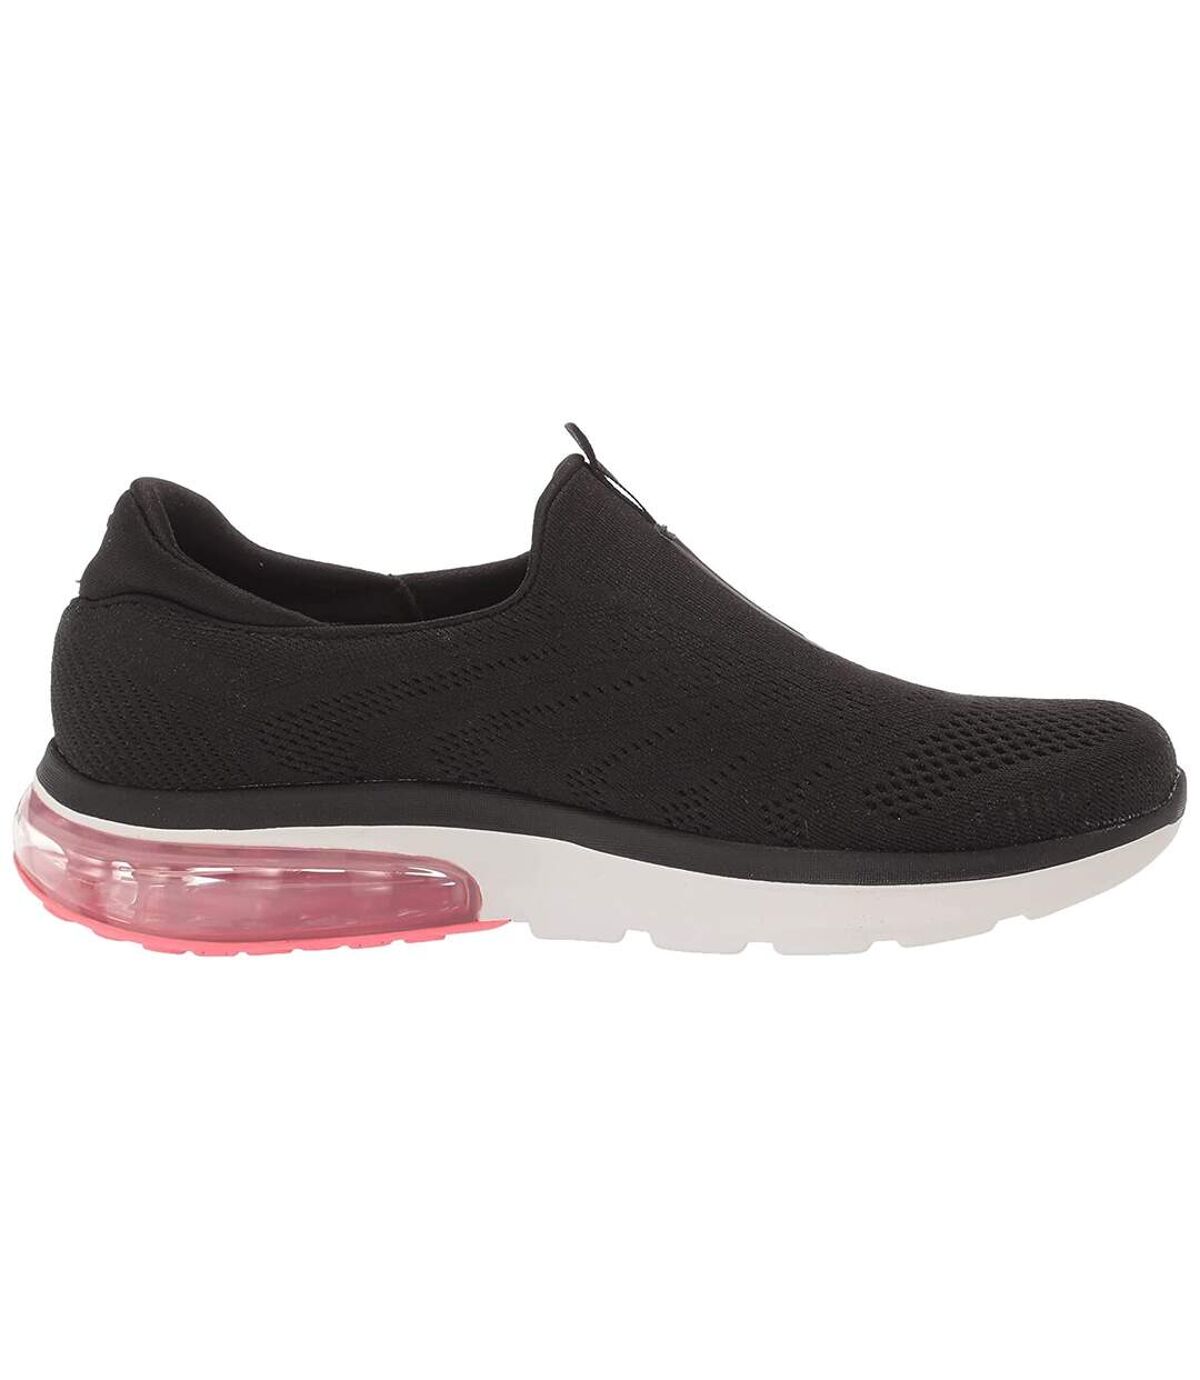 Skechers Womens/Ladies Go Walk Air 2.0 Shoes (Black/Multicolored) - UTFS8320